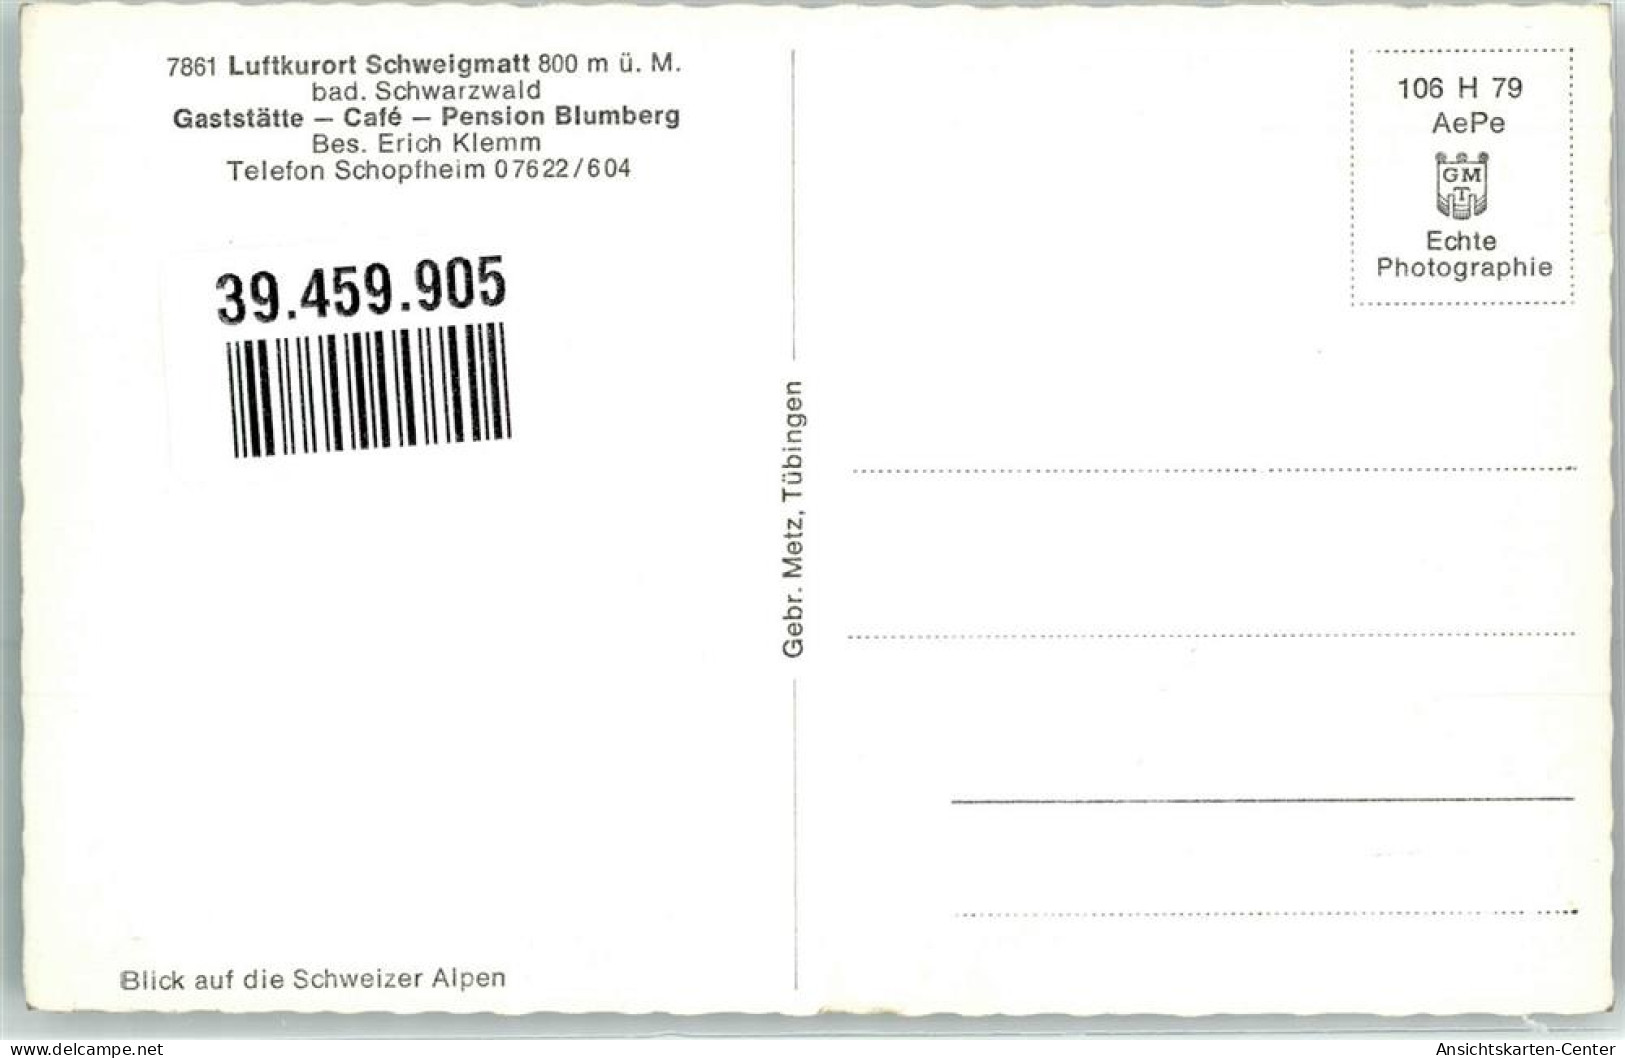 39459905 - Schweigmatt - Schopfheim